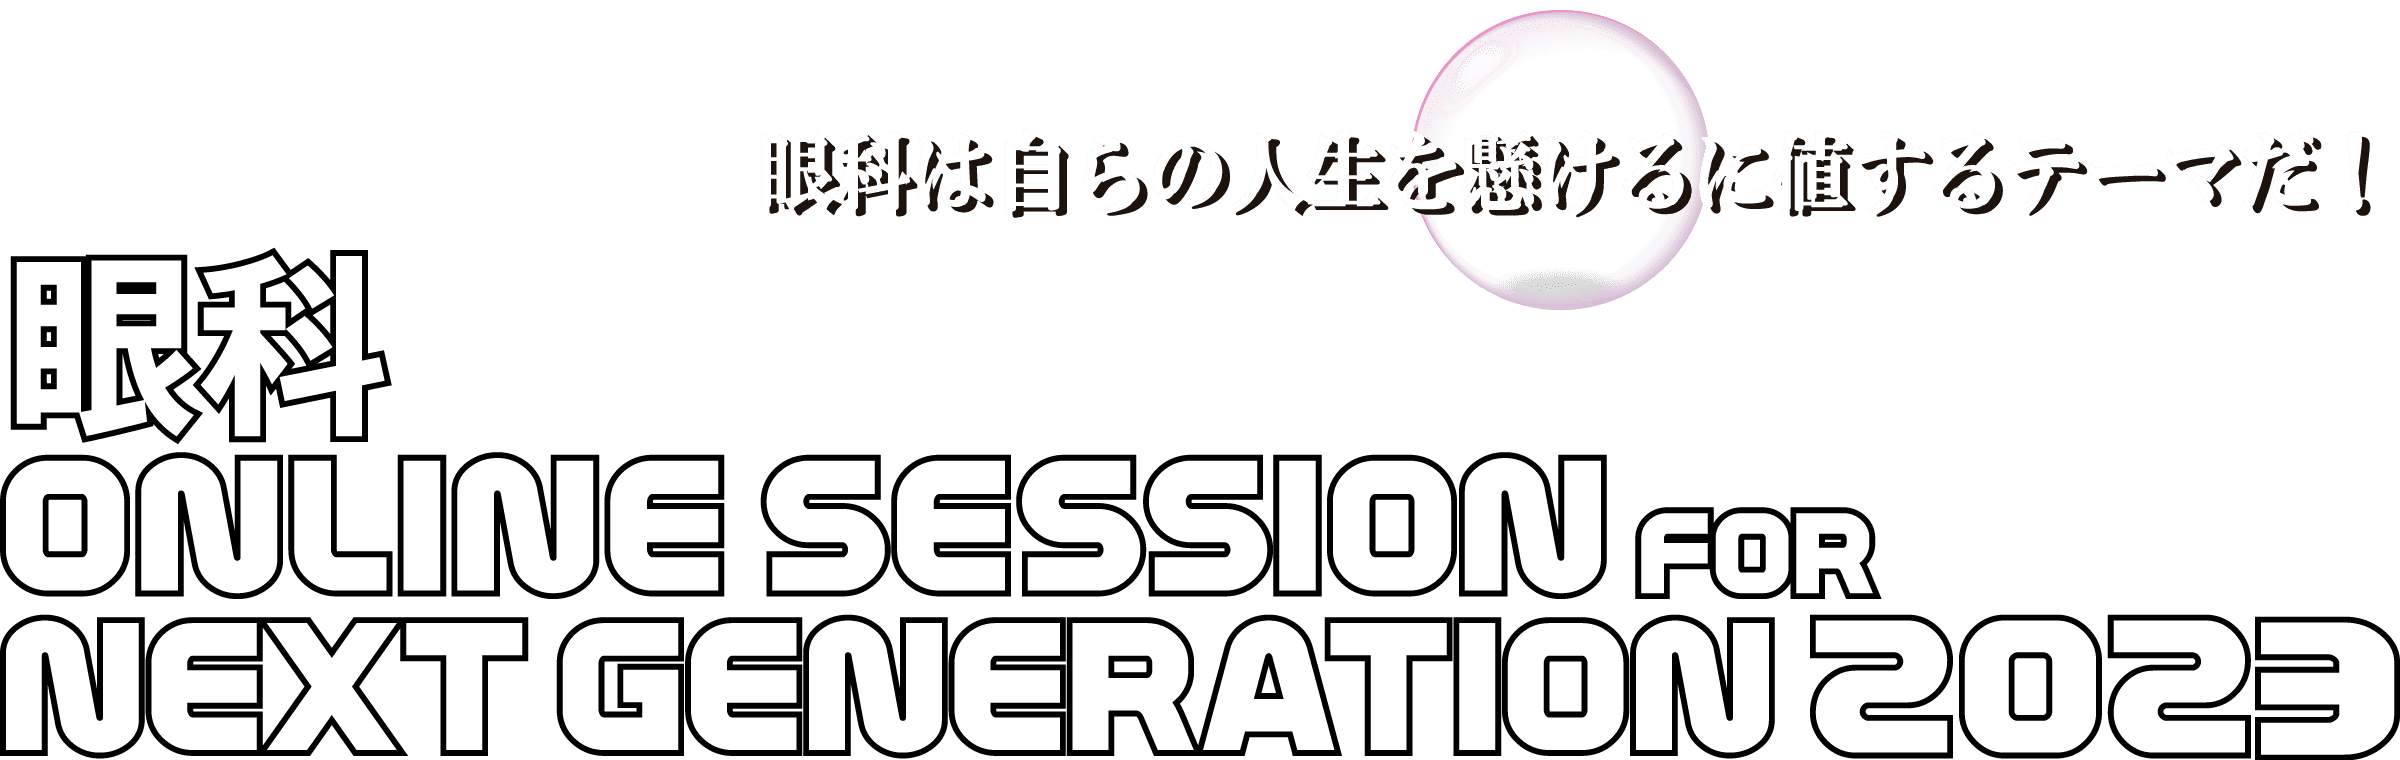 眼科 ONLINE SESSION FOR NEXT GENERATION 2023